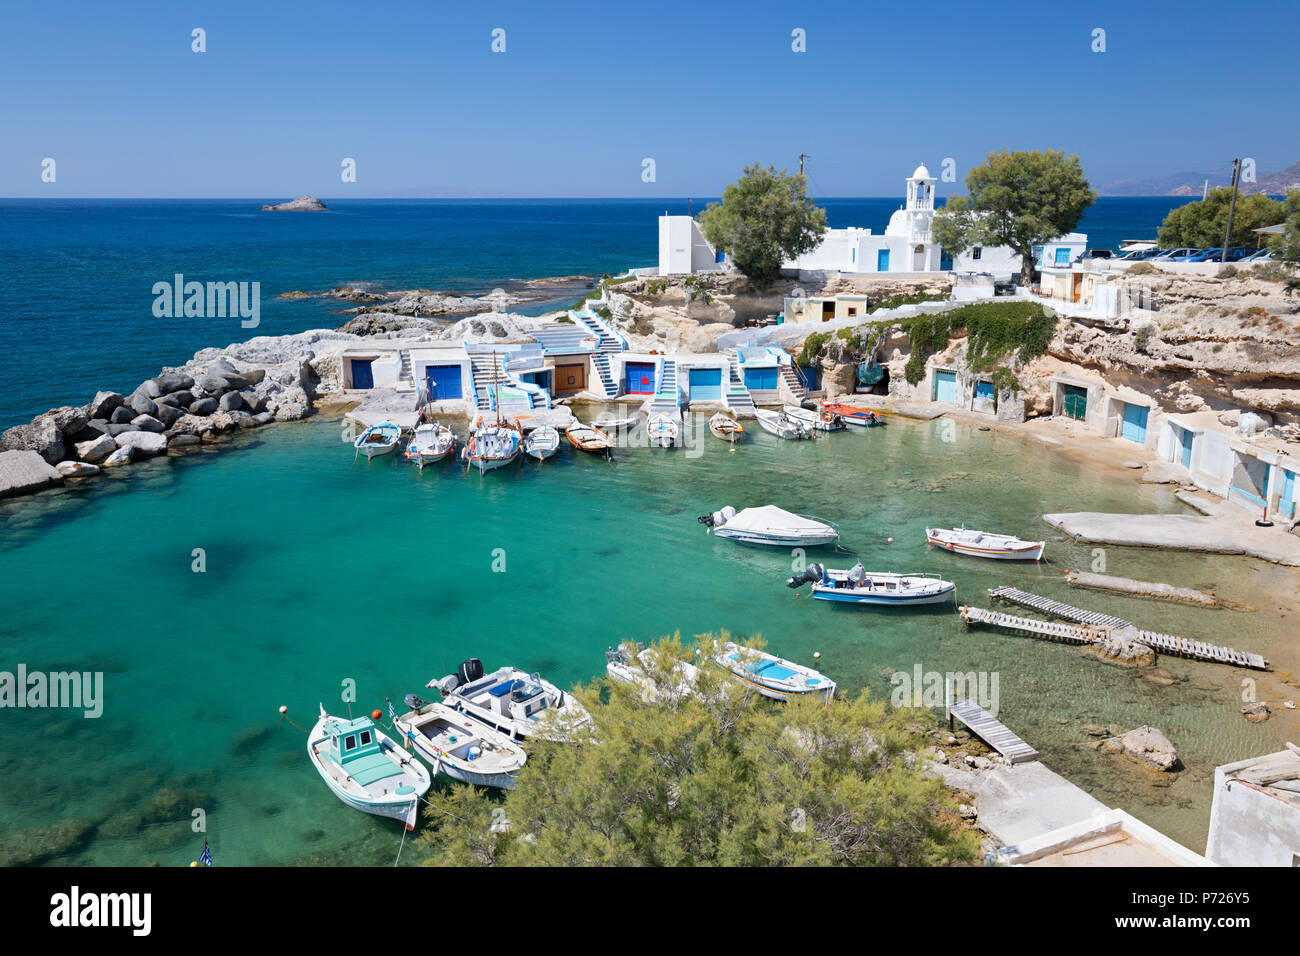 Vue sur le port de pêche avec des bateaux et des bateaux colorés, Mandrakia, Milos, Cyclades, Mer Égée, îles grecques, Grèce, Europe Banque D'Images